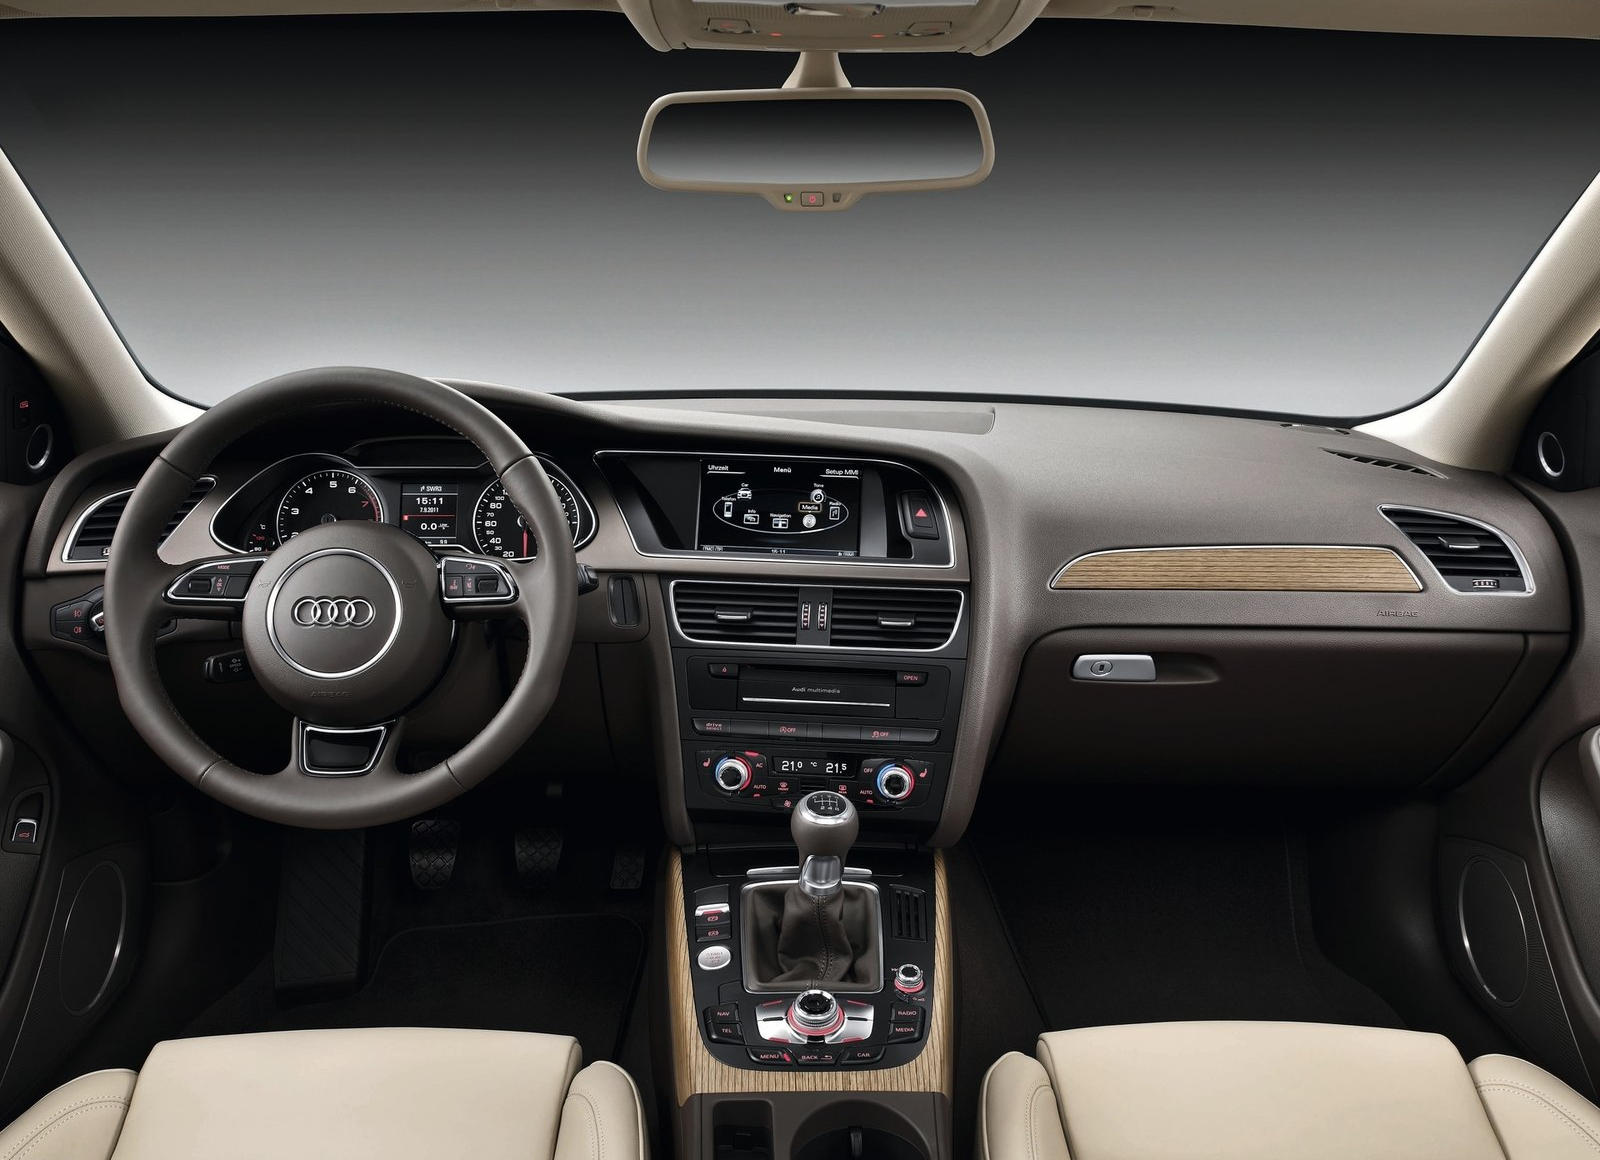 2015 Audi A4 Sedan Interior Photos | CarBuzz